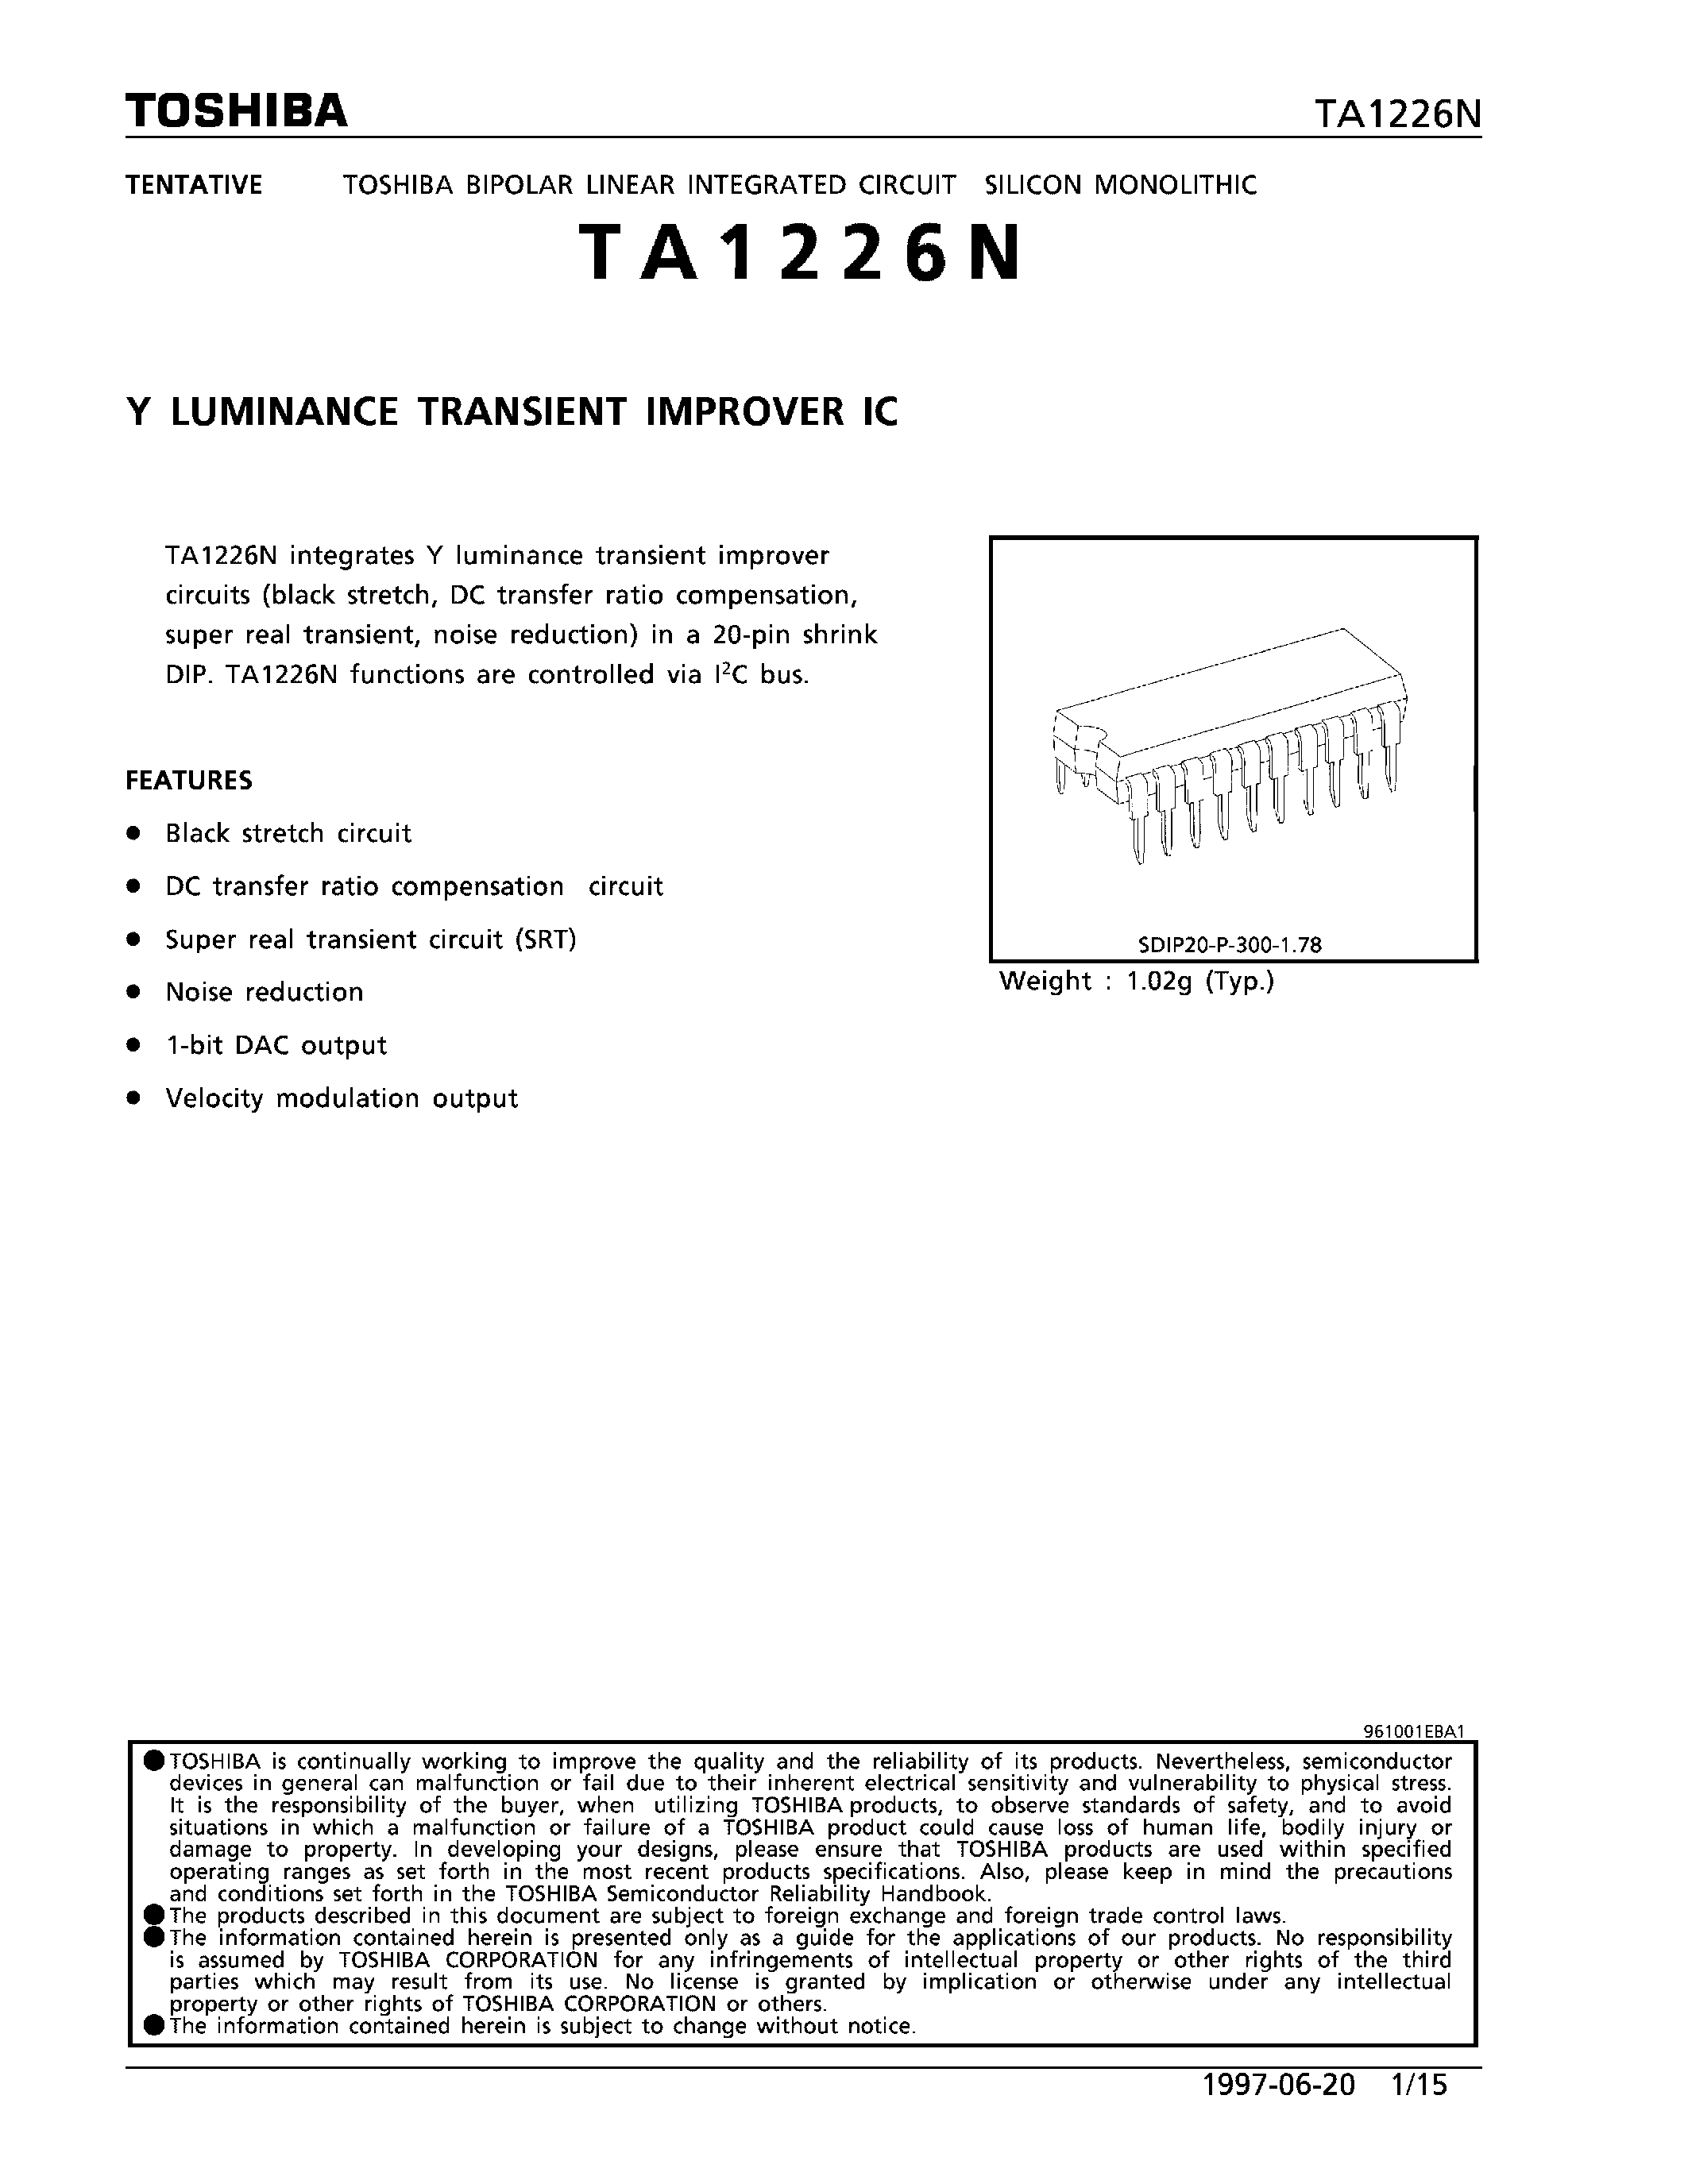 Datasheet TA1226N - Y LUMINANCE TRANSIENT IMPROVER IC page 1